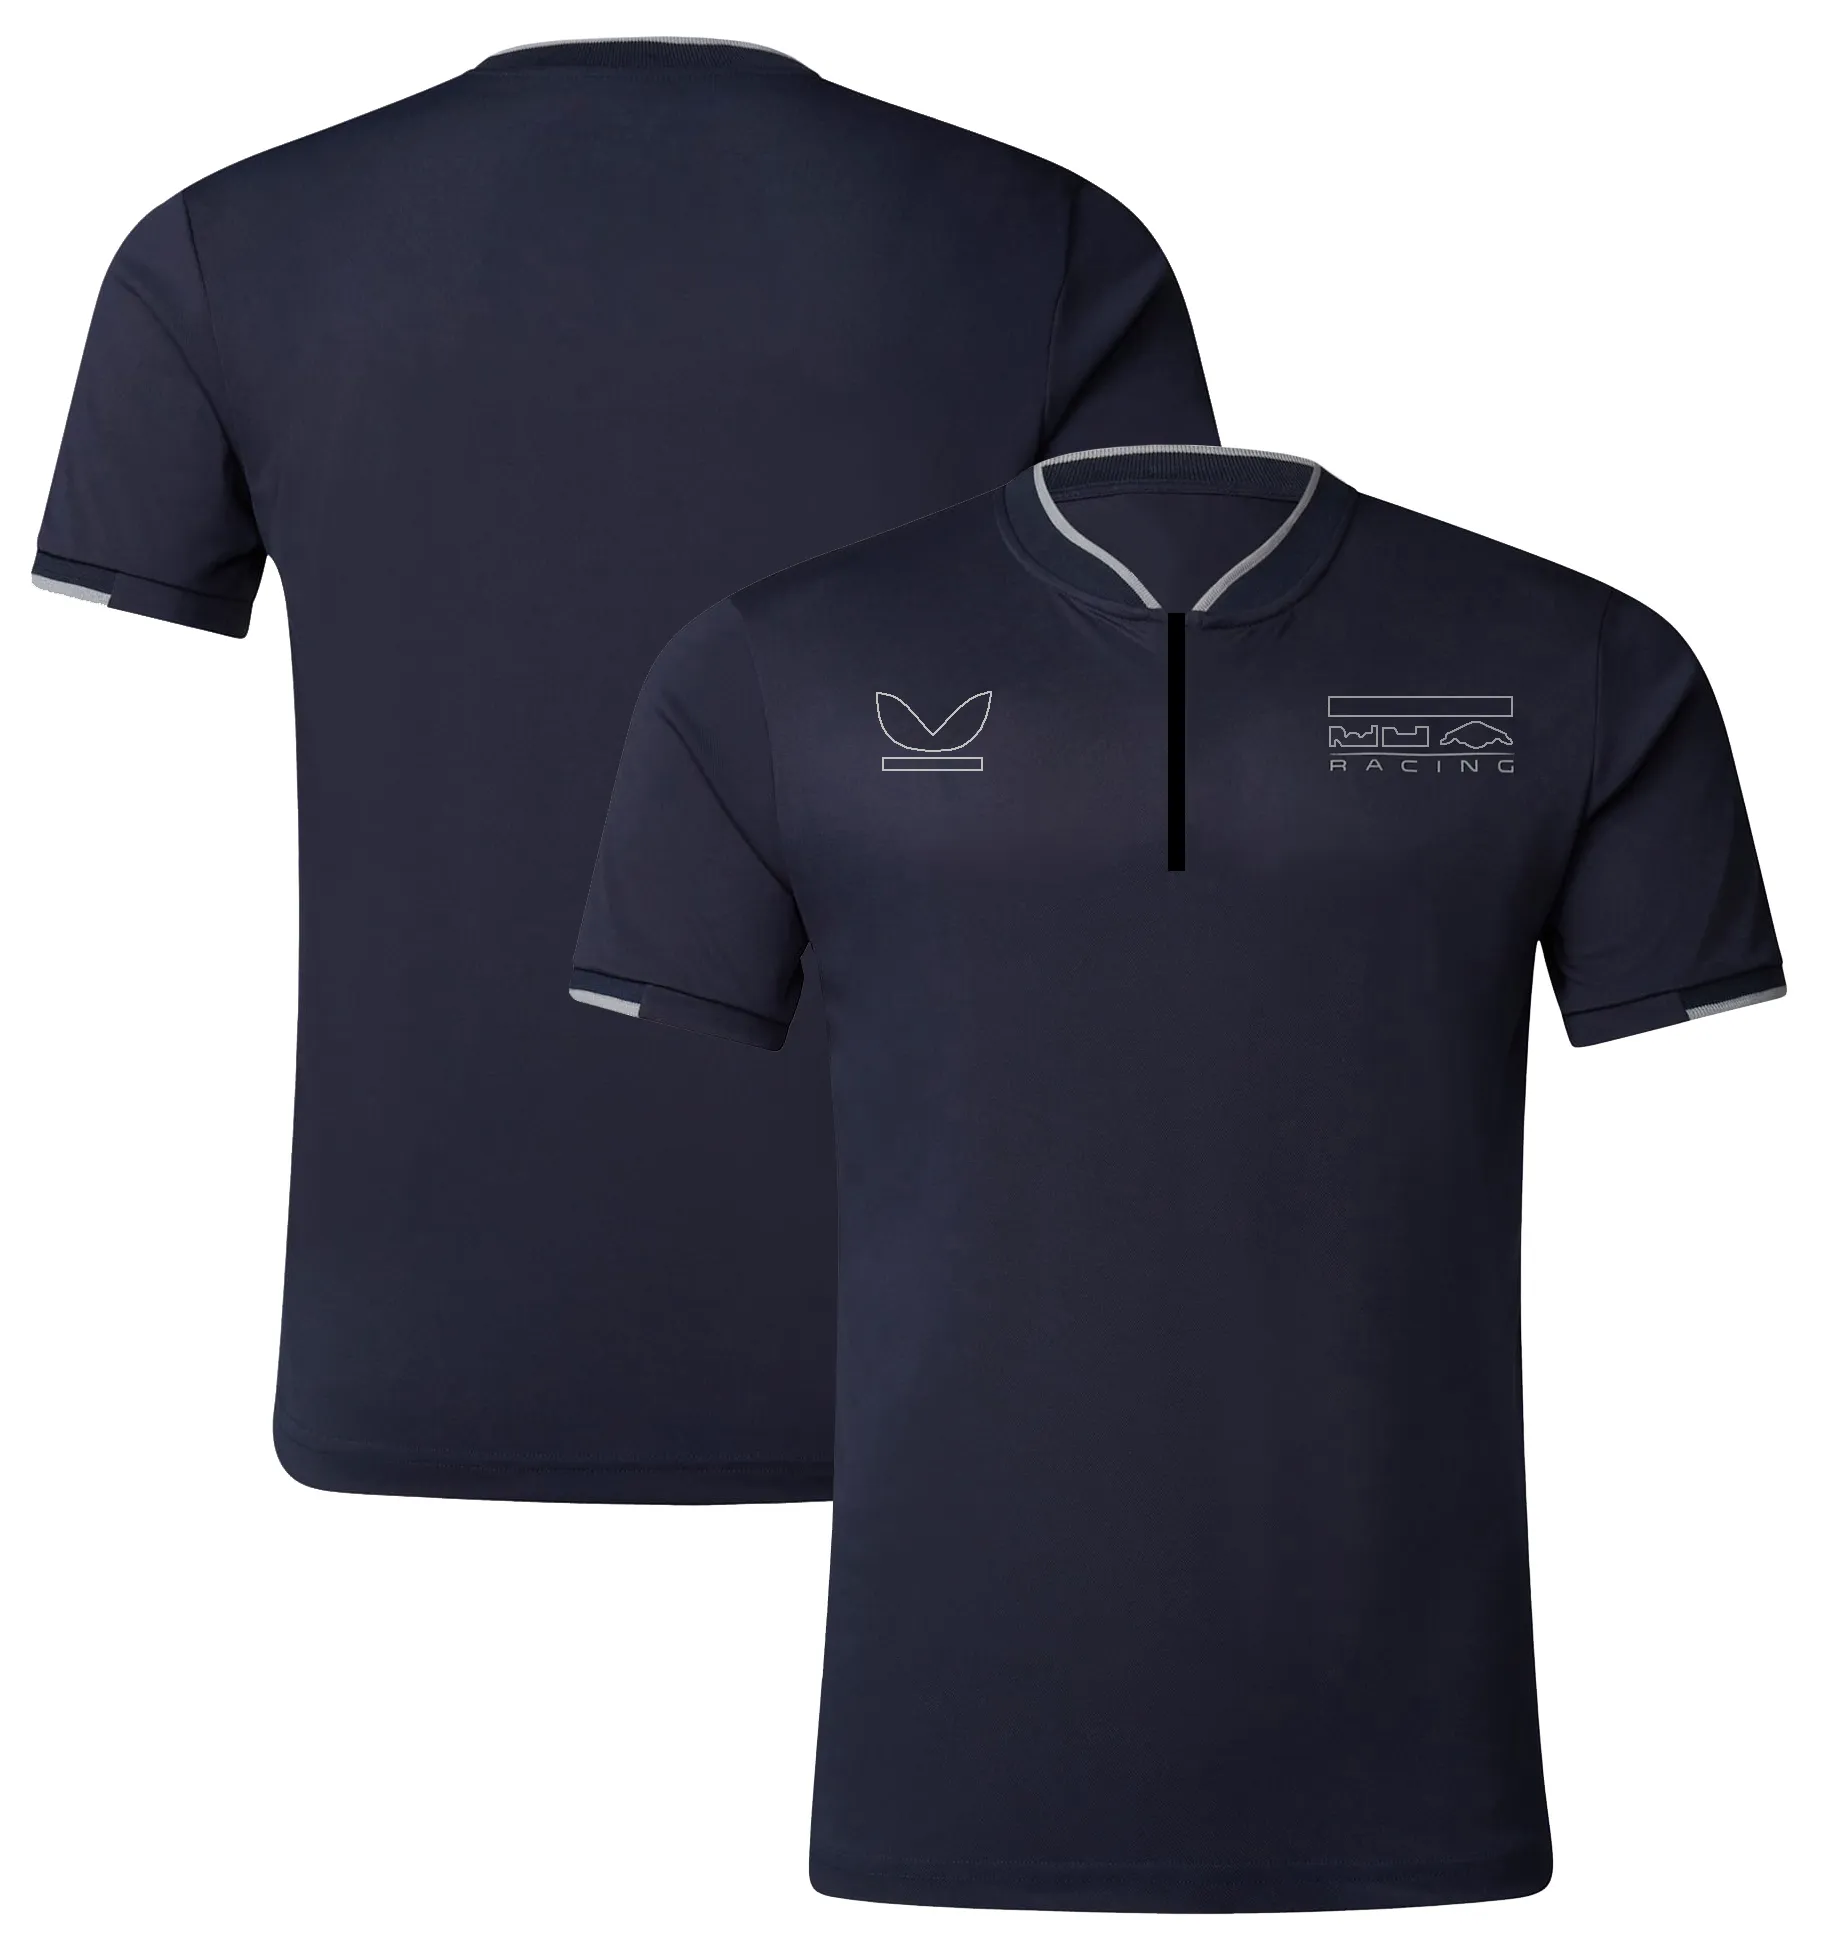 F1 racing terno 2023 nova equipe de manga curta lapela camiseta verão camisa polo plus size personalização de manga curta para homem e mulher